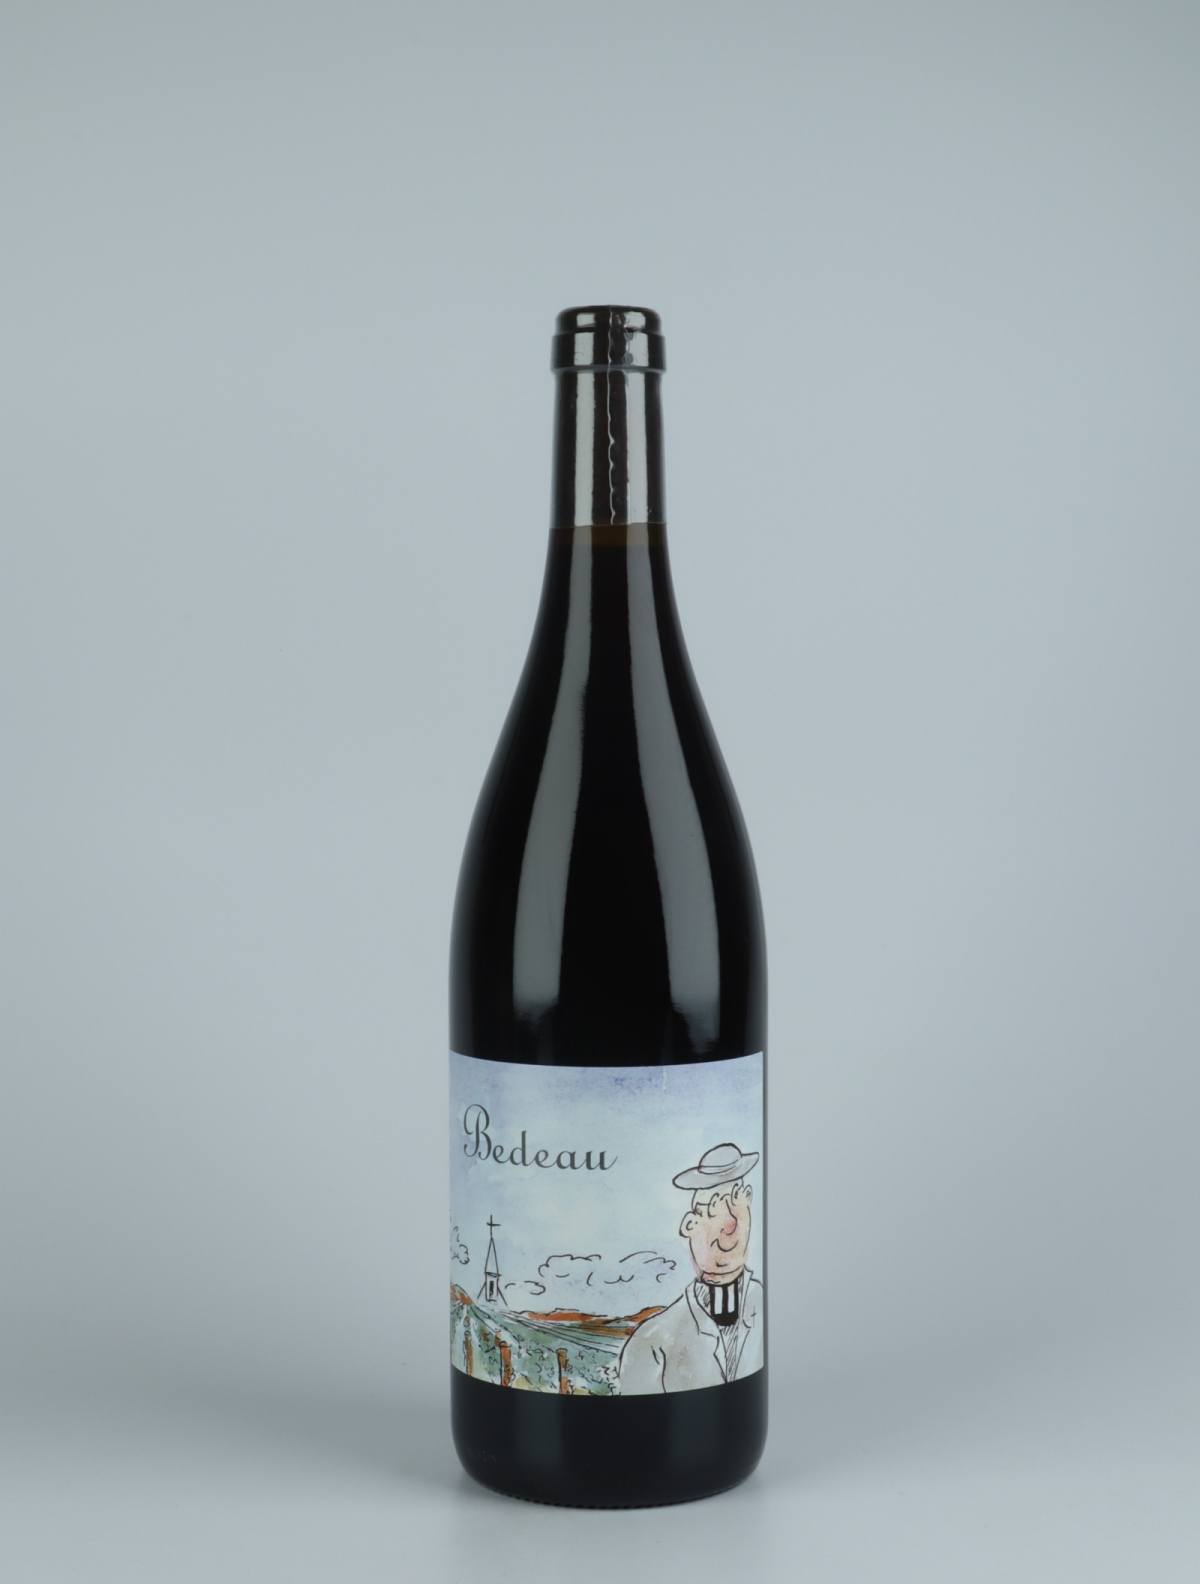 En flaske 2019 Bourgogne Rouge - Bedeau - Qvevris Rødvin fra Frédéric Cossard, Bourgogne i Frankrig